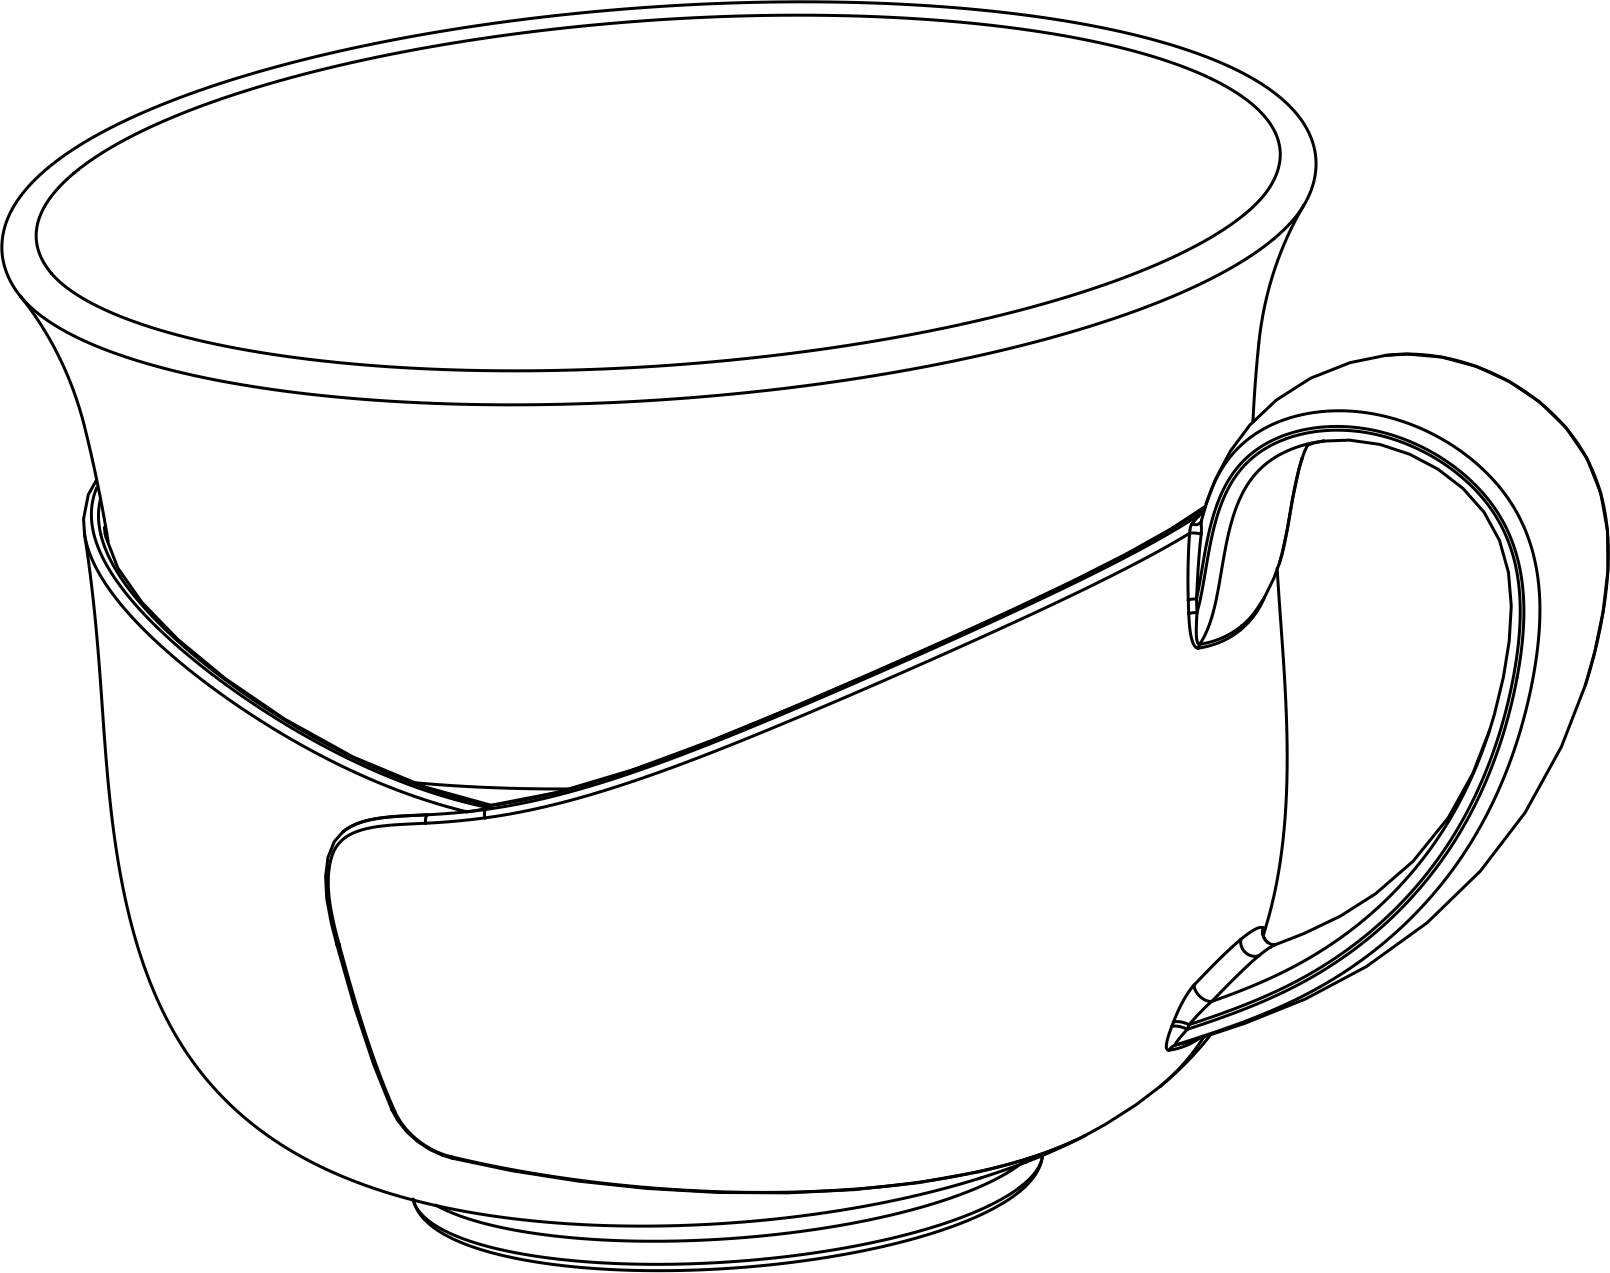 1本外观设计产品的名称:茶杯2